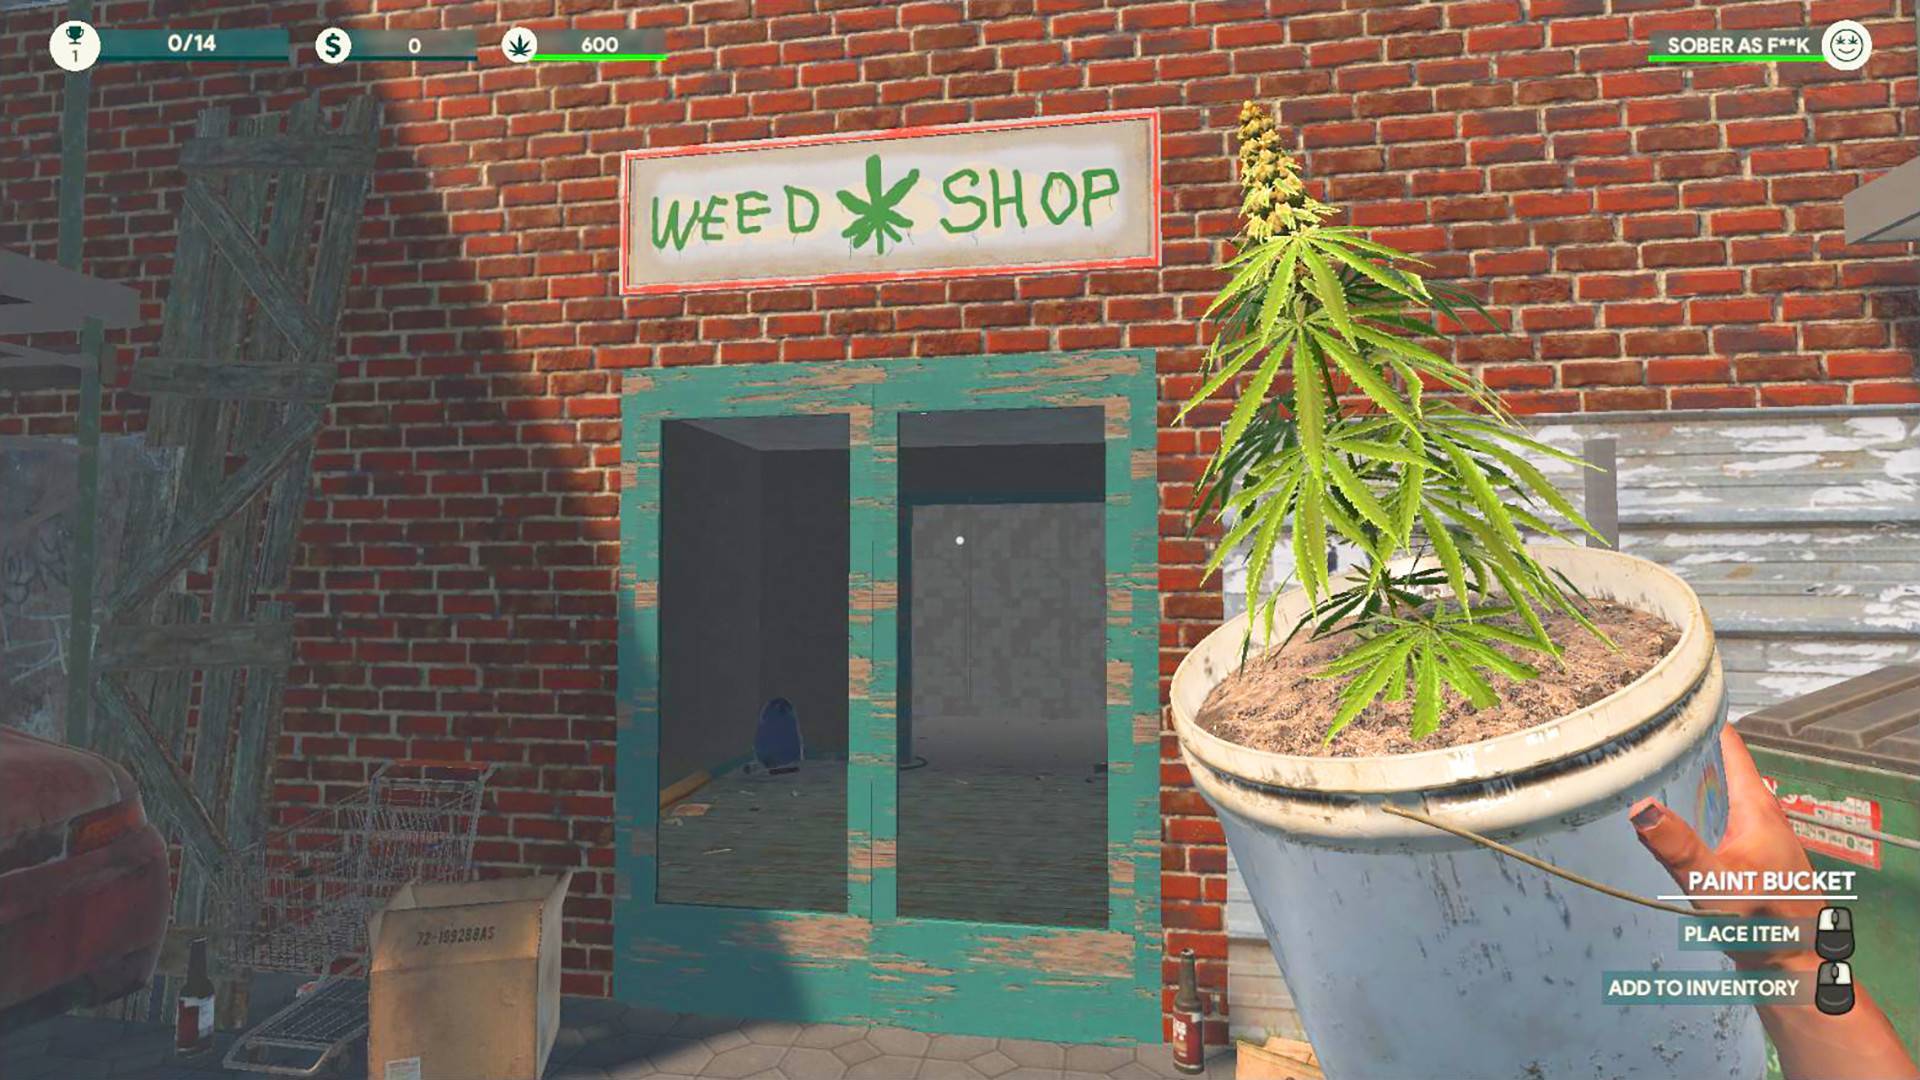 weed shop 2 steam